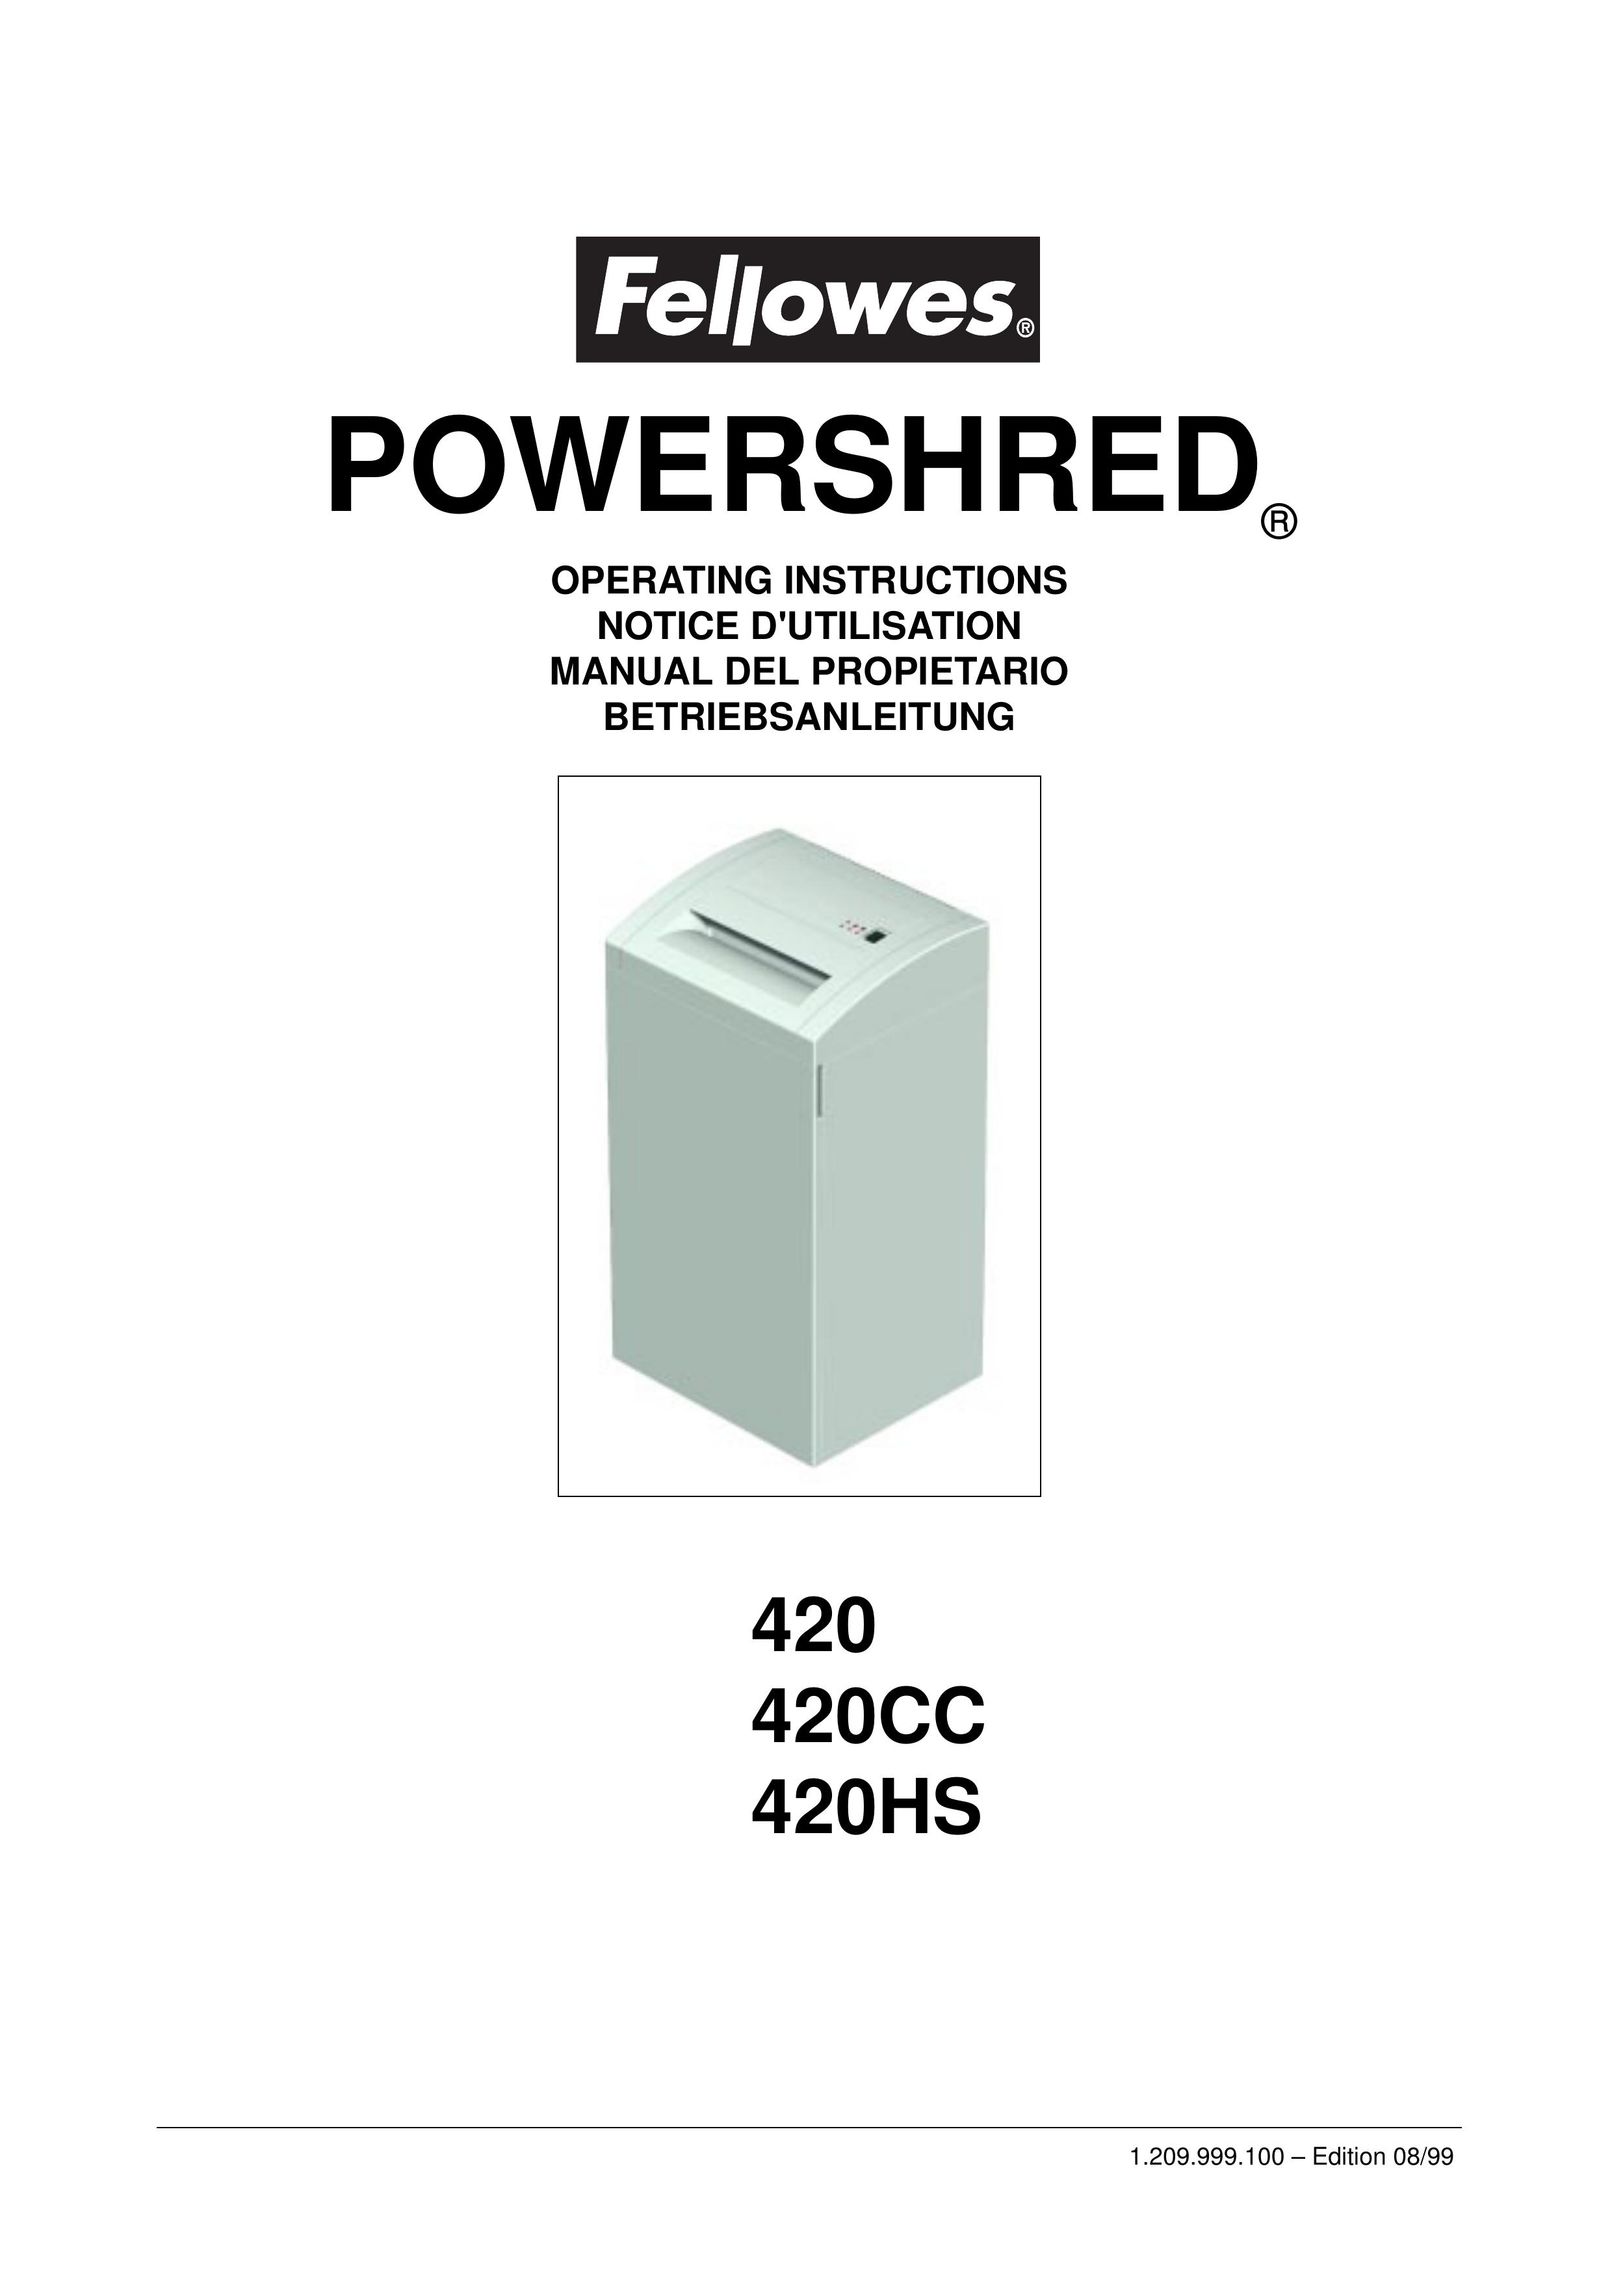 Fellowes 420CC Paper Shredder User Manual